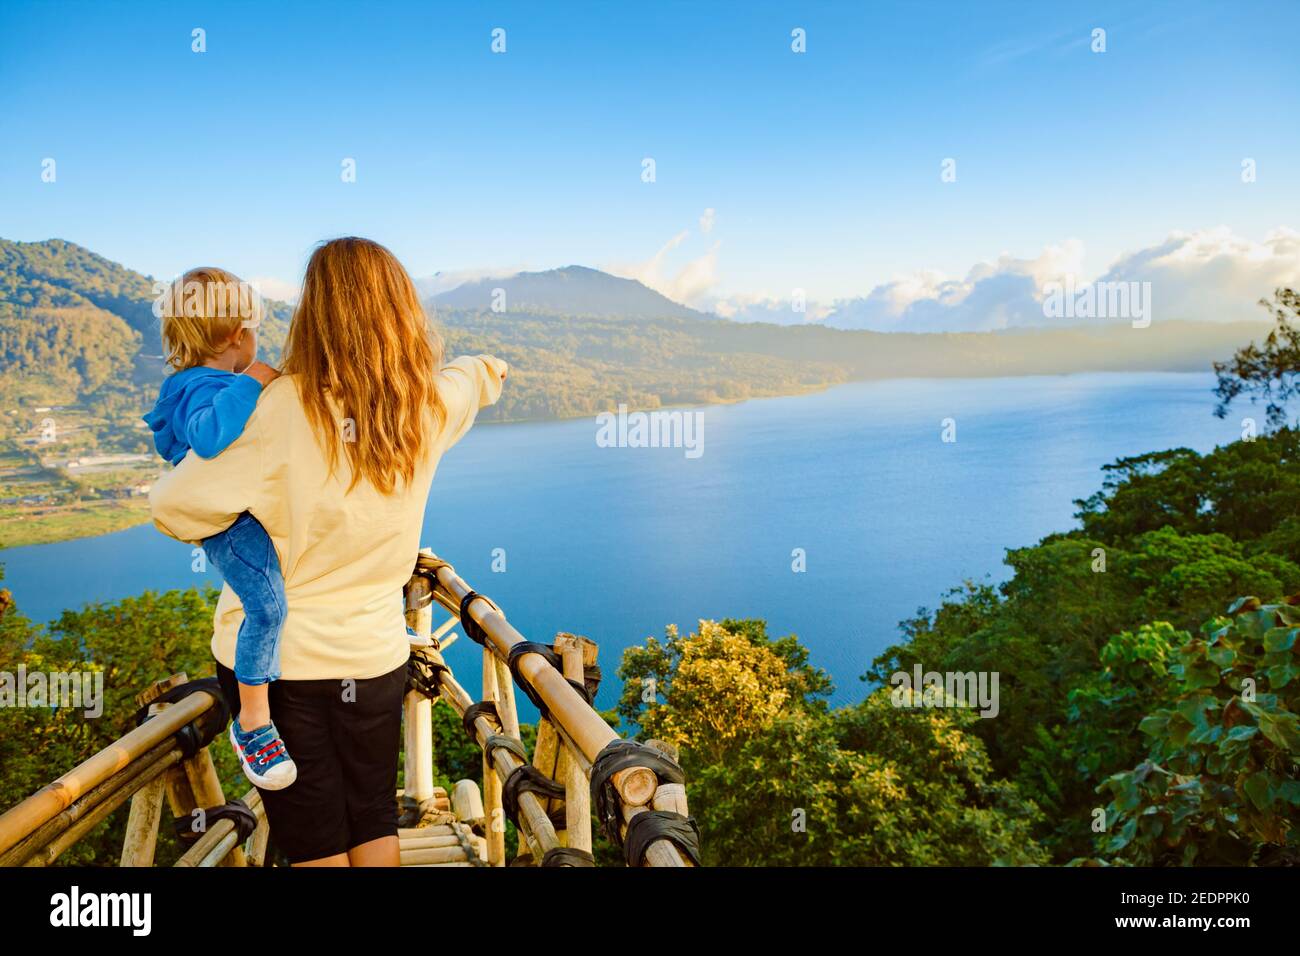 Vacances d'été en famille. La jeune mère avec son bébé se trouve au balcon sur la falaise. Un enfant heureux regarde la vue incroyable sur la jungle tropicale. Le lac de Buyan est pop Banque D'Images